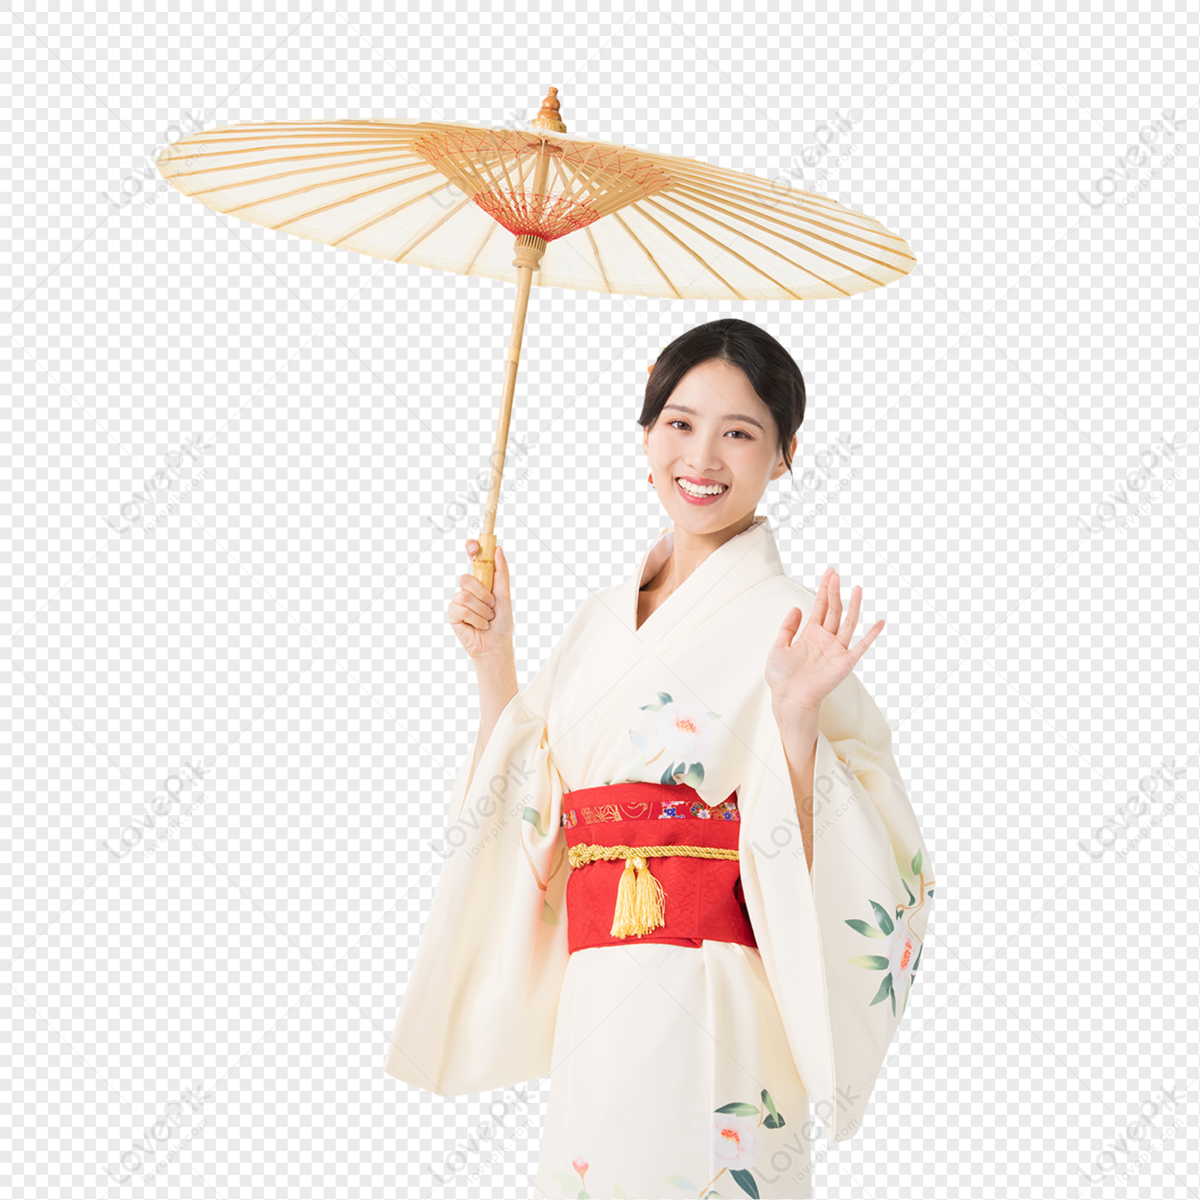 京和傘を手に持った着物の美女 イラスト 京和傘を手に持った着物の美しさ 東アジア 日本 フリー素材 透過 Lovepik